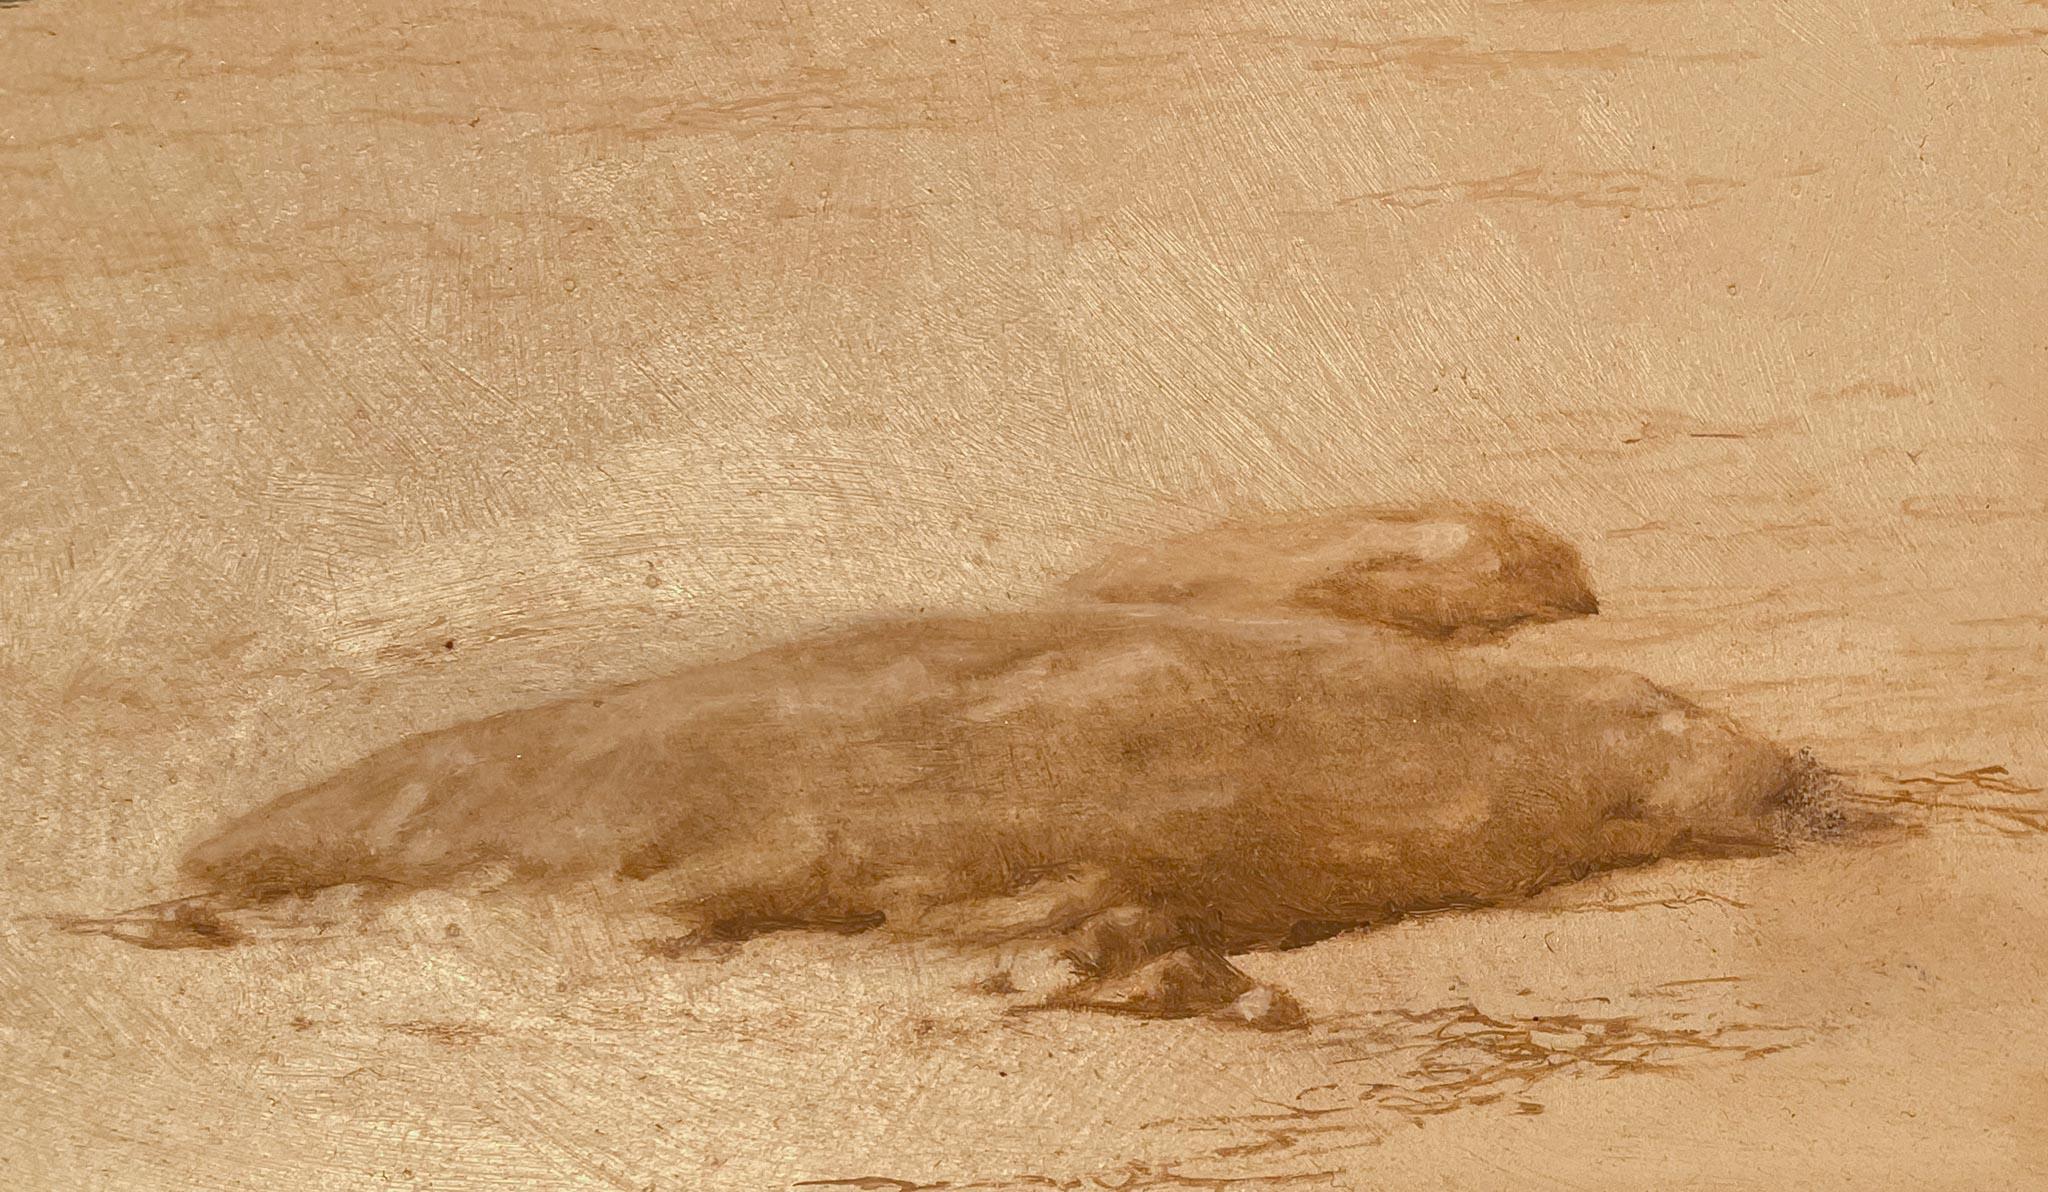 Boot angedockt am Ufer von Kenneth Davies (1925-2017)
Öl auf Karton
18 ¾ x 33 ⅝ Zoll ungerahmt (47,625 x 85,42 cm) 
24 ¾ x 40 Zoll gerahmt (62,865 x 101,6 cm)
Signiert unten links

Beschreibung:
Dieses Gemälde von Kenneth Davies zeigt ein Boot, das